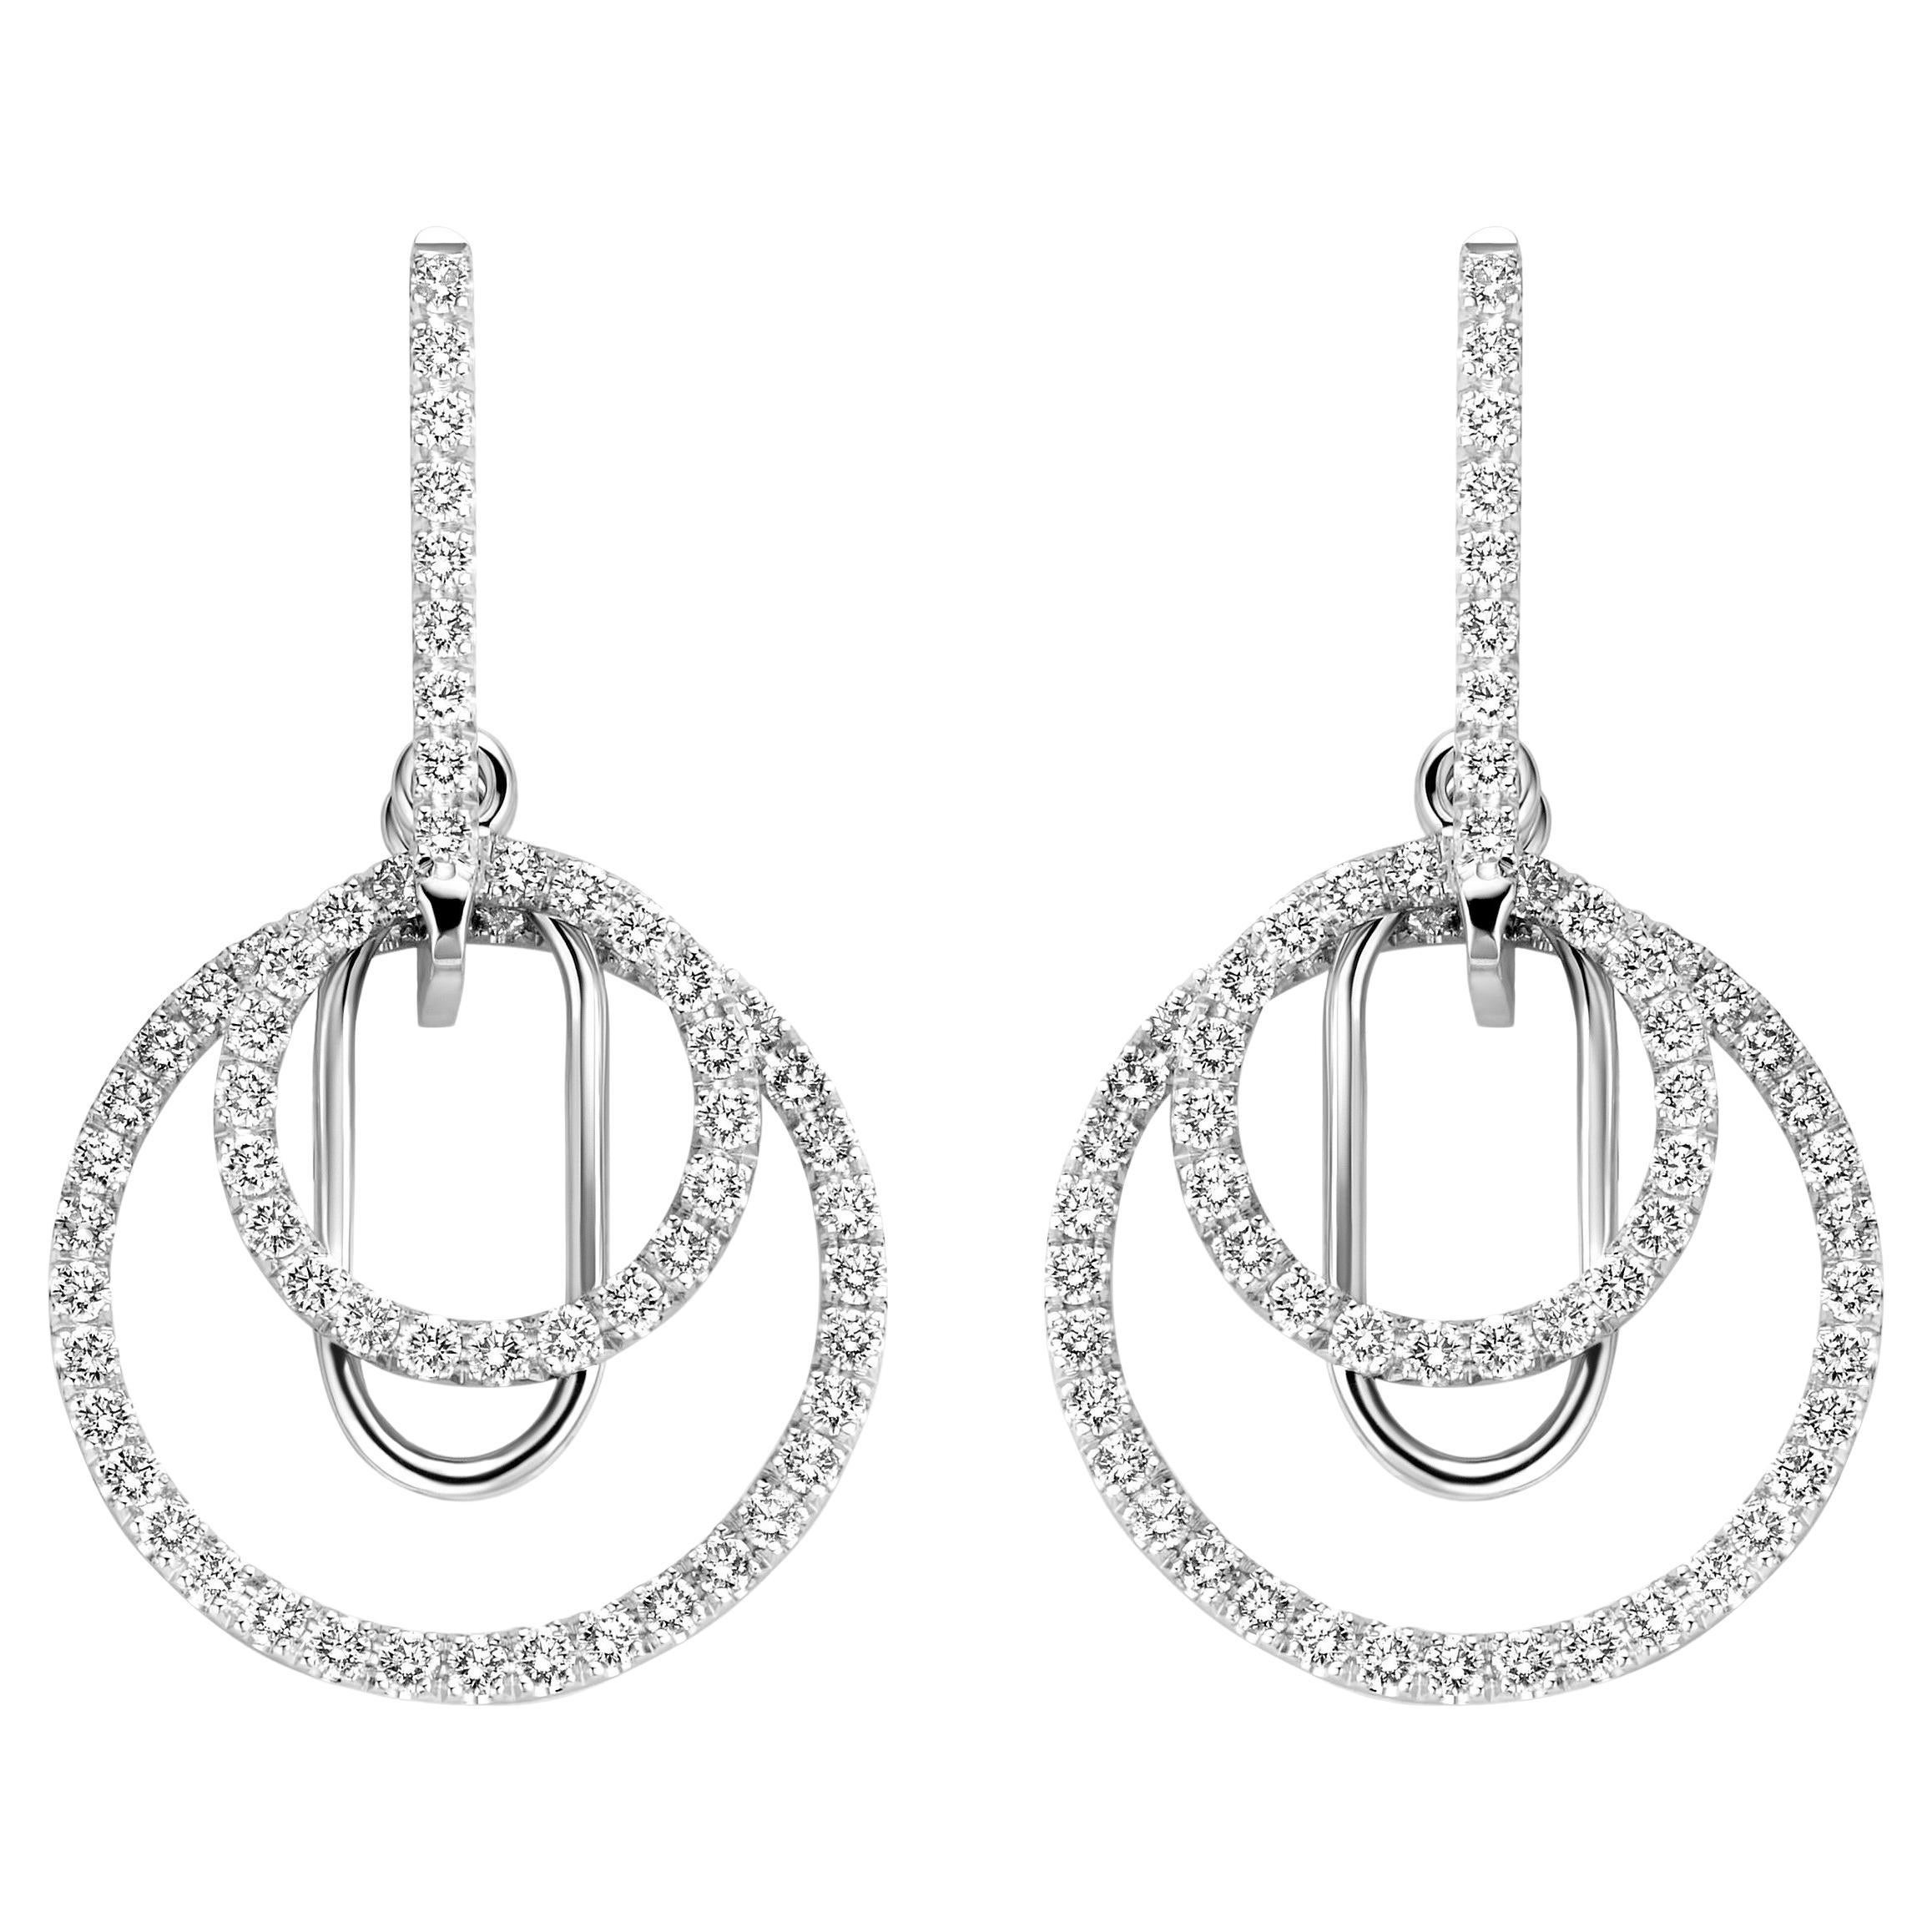 Pendants d'oreilles contemporains en or blanc 18 carats avec diamants de 1,30 carat de qualité VS-F